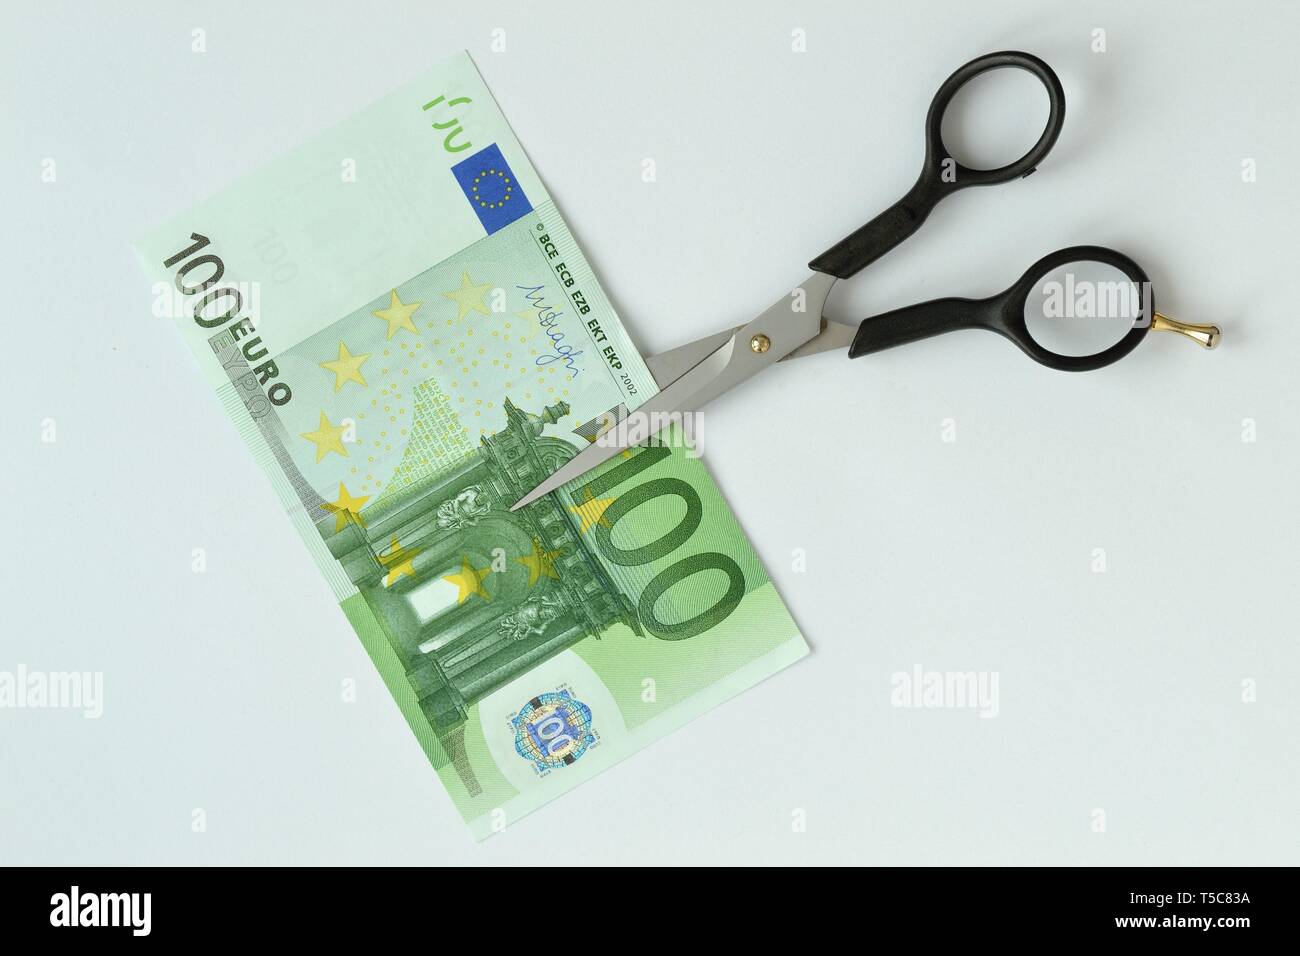 Il taglio a forbice di banconote in euro - Concetto di riduzione dei costi, il taglio dei prezzi Foto Stock